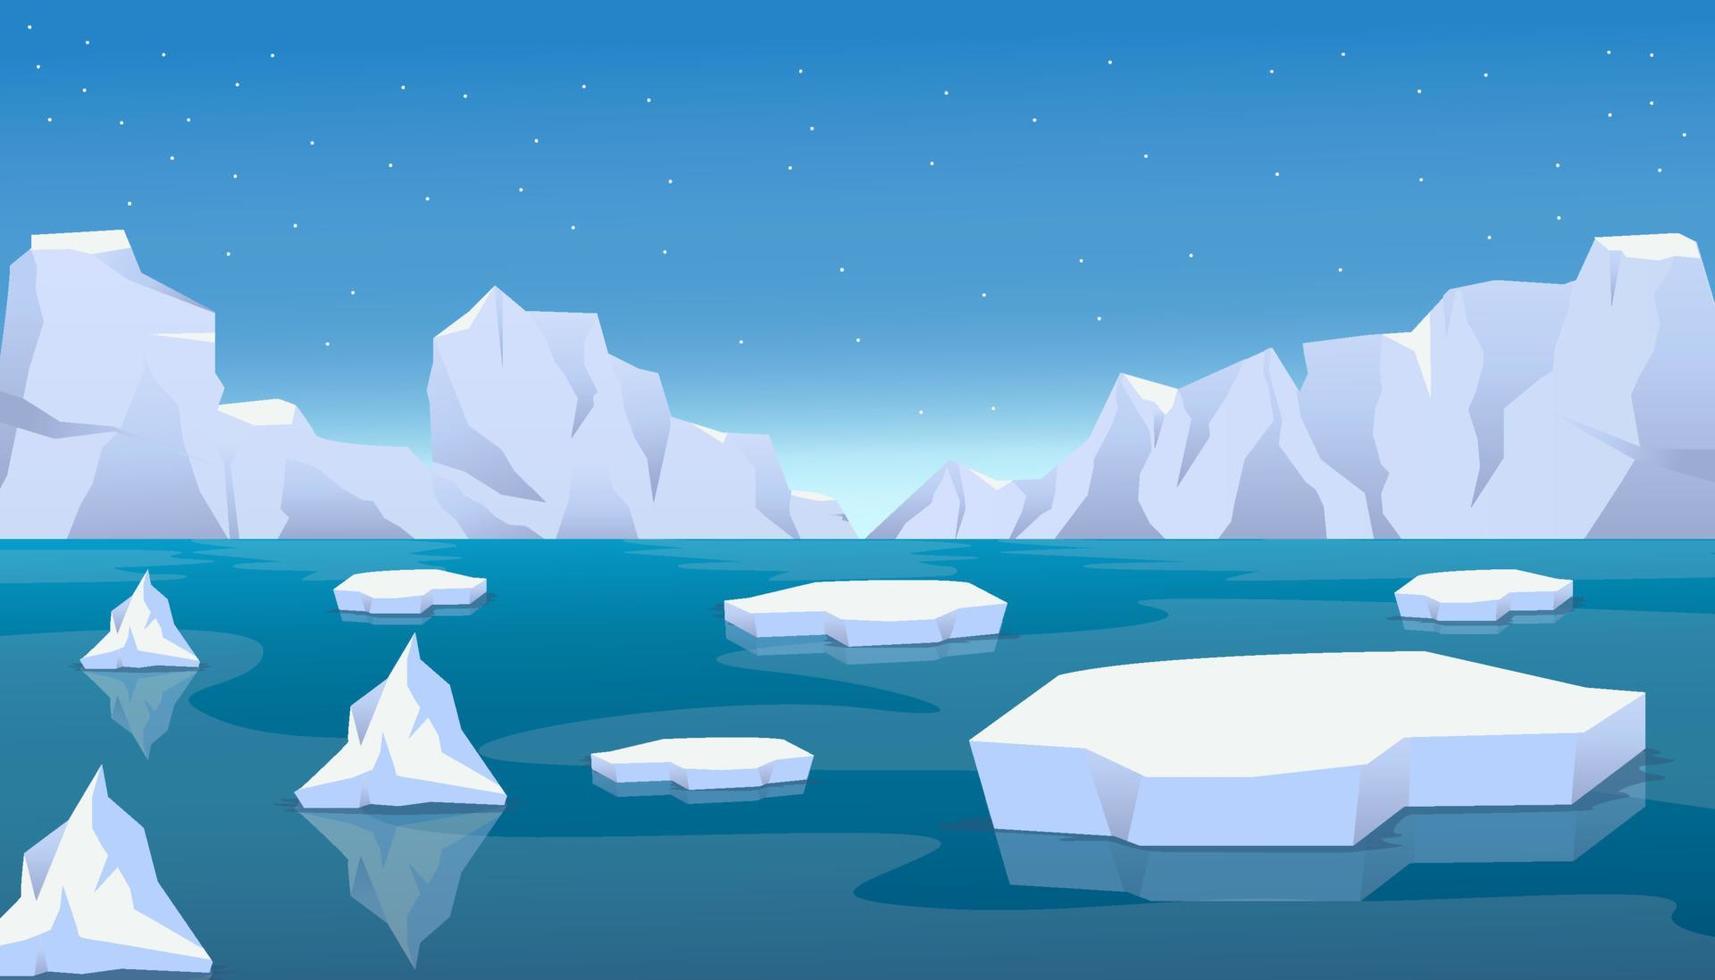 paesaggio di ghiaccio artico con iceberg rotti e ghiaccio galleggiante sul mare. effetto del riscaldamento globale vettore